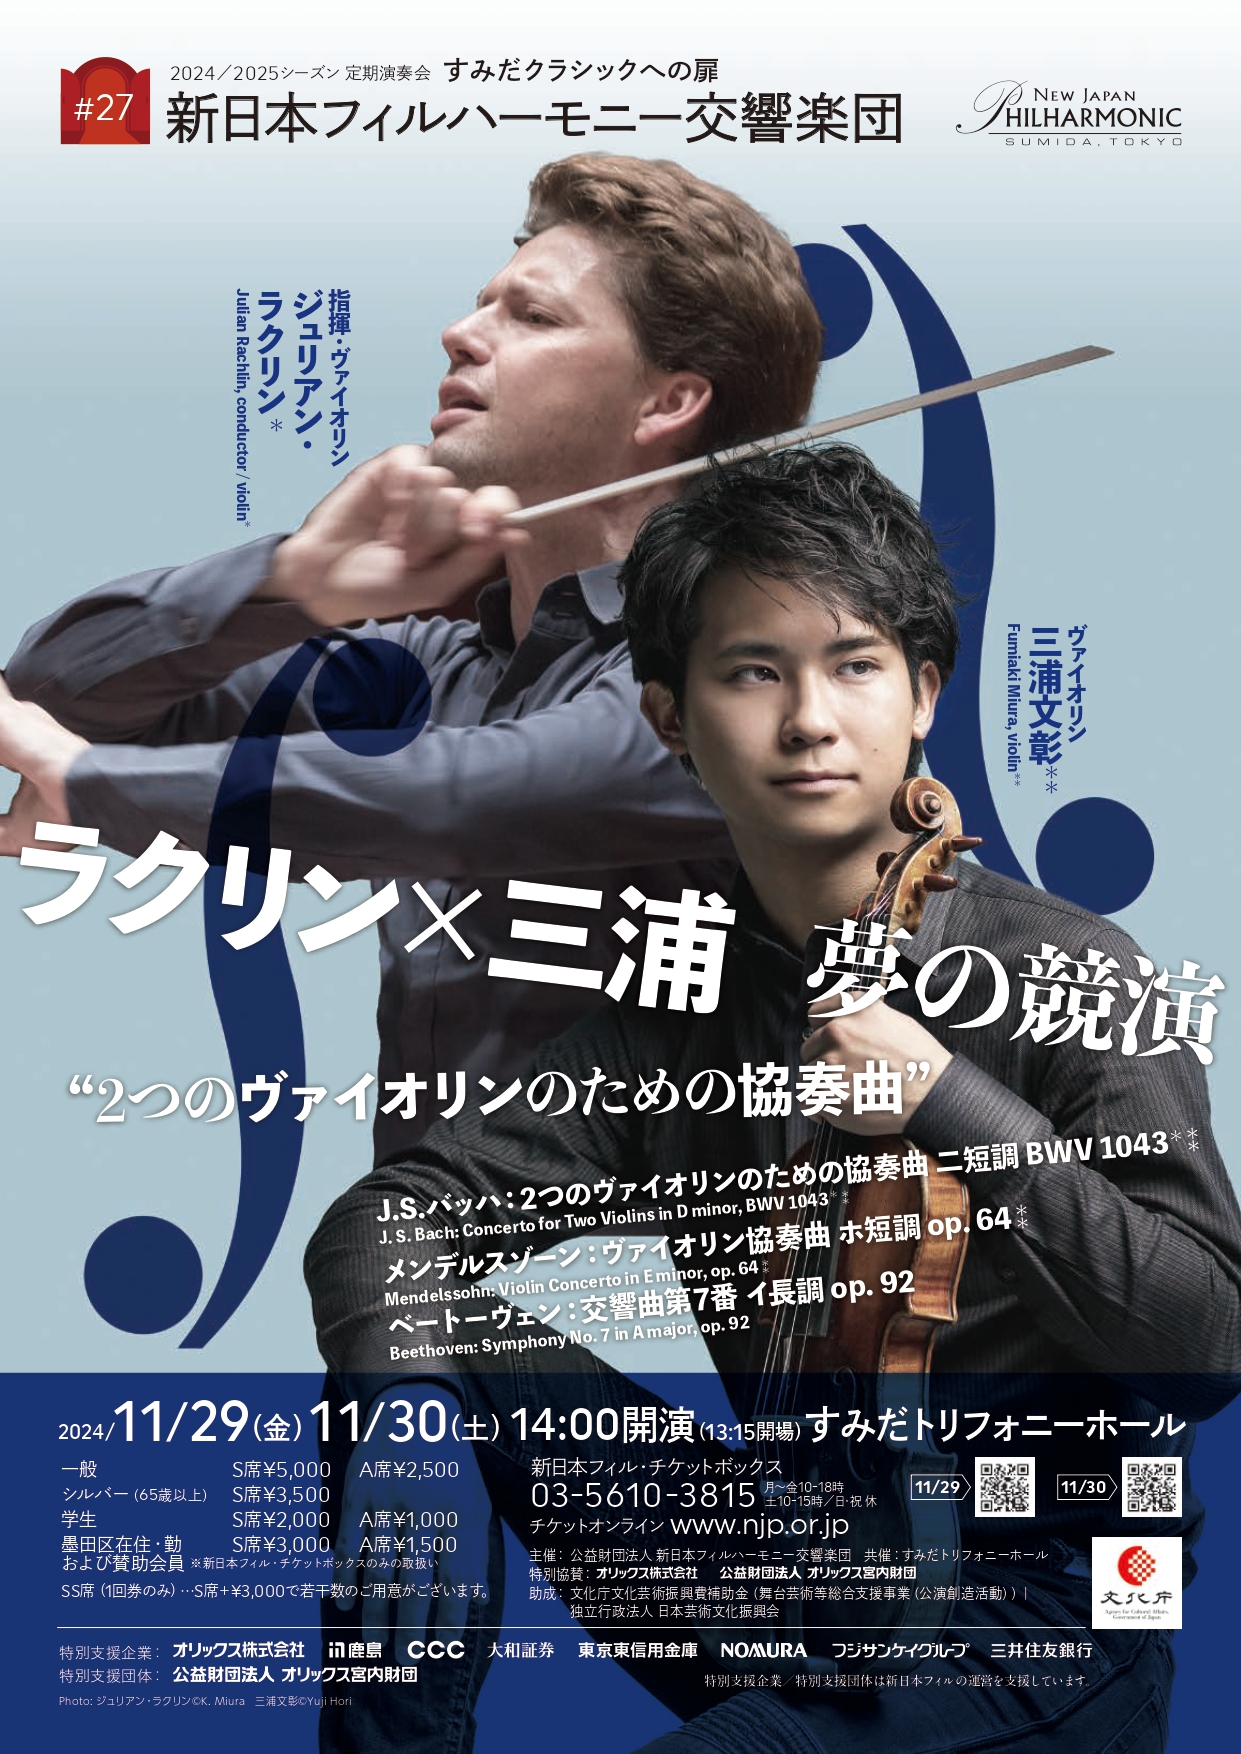 すみだクラシックへの扉 #27（土） | [公式]新日本フィルハーモニー交響楽団—New Japan Philharmonic—